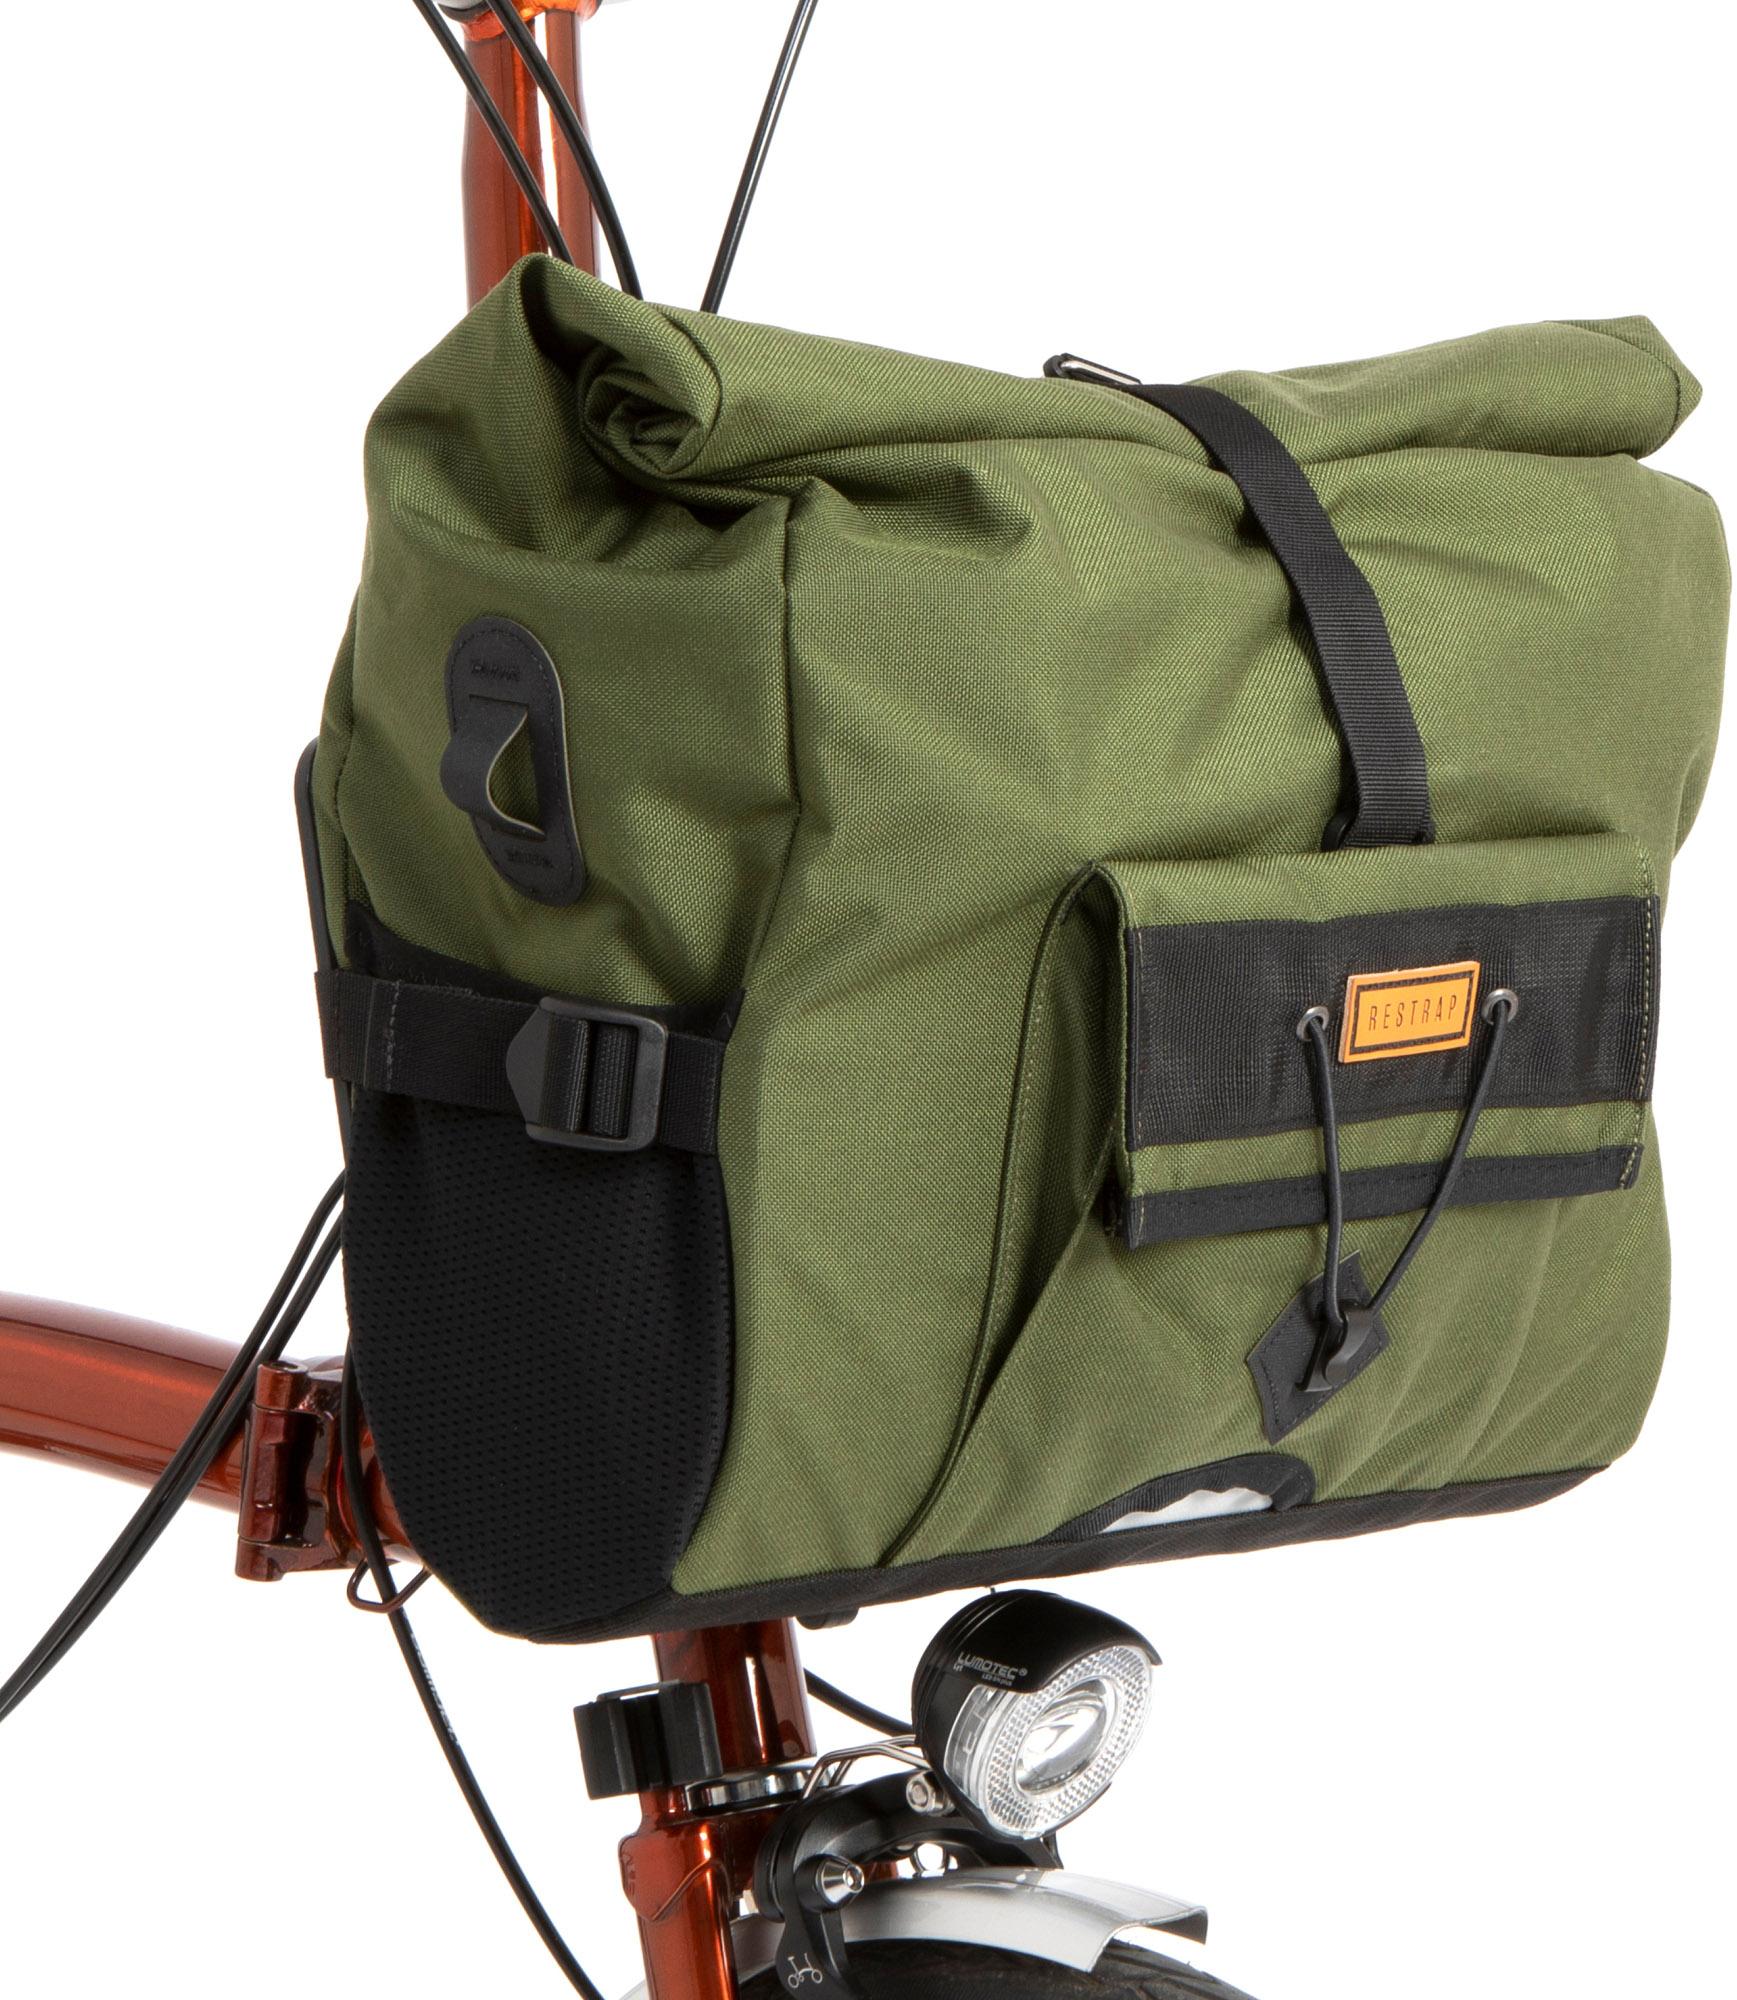 Restrap City Loader Commuter Bike Bag - Olive